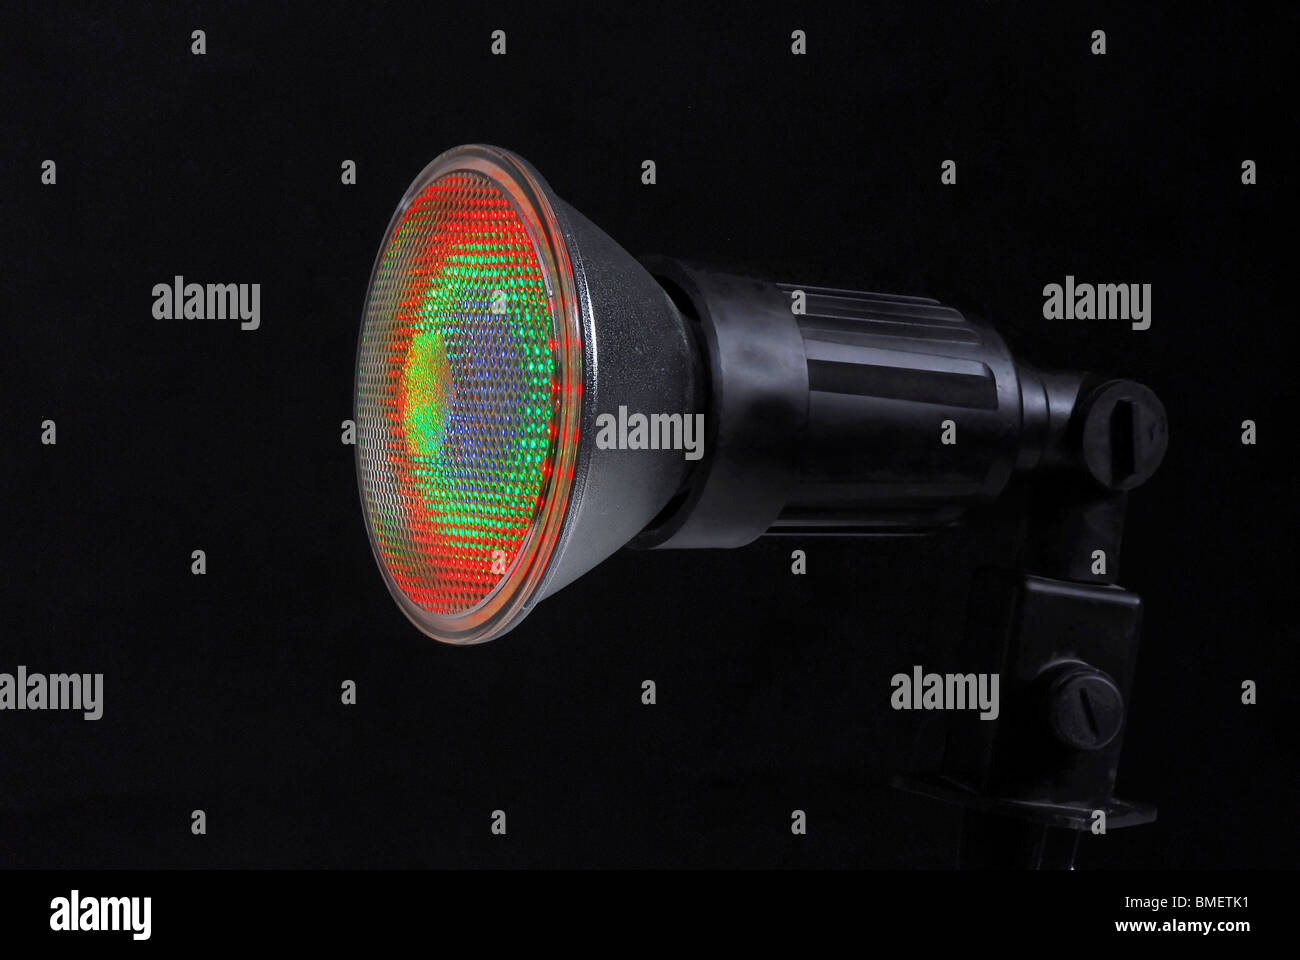 Beleuchtete LED (Light Emitting Diode) Spotlight auf schwarzem Hintergrund Stockfoto